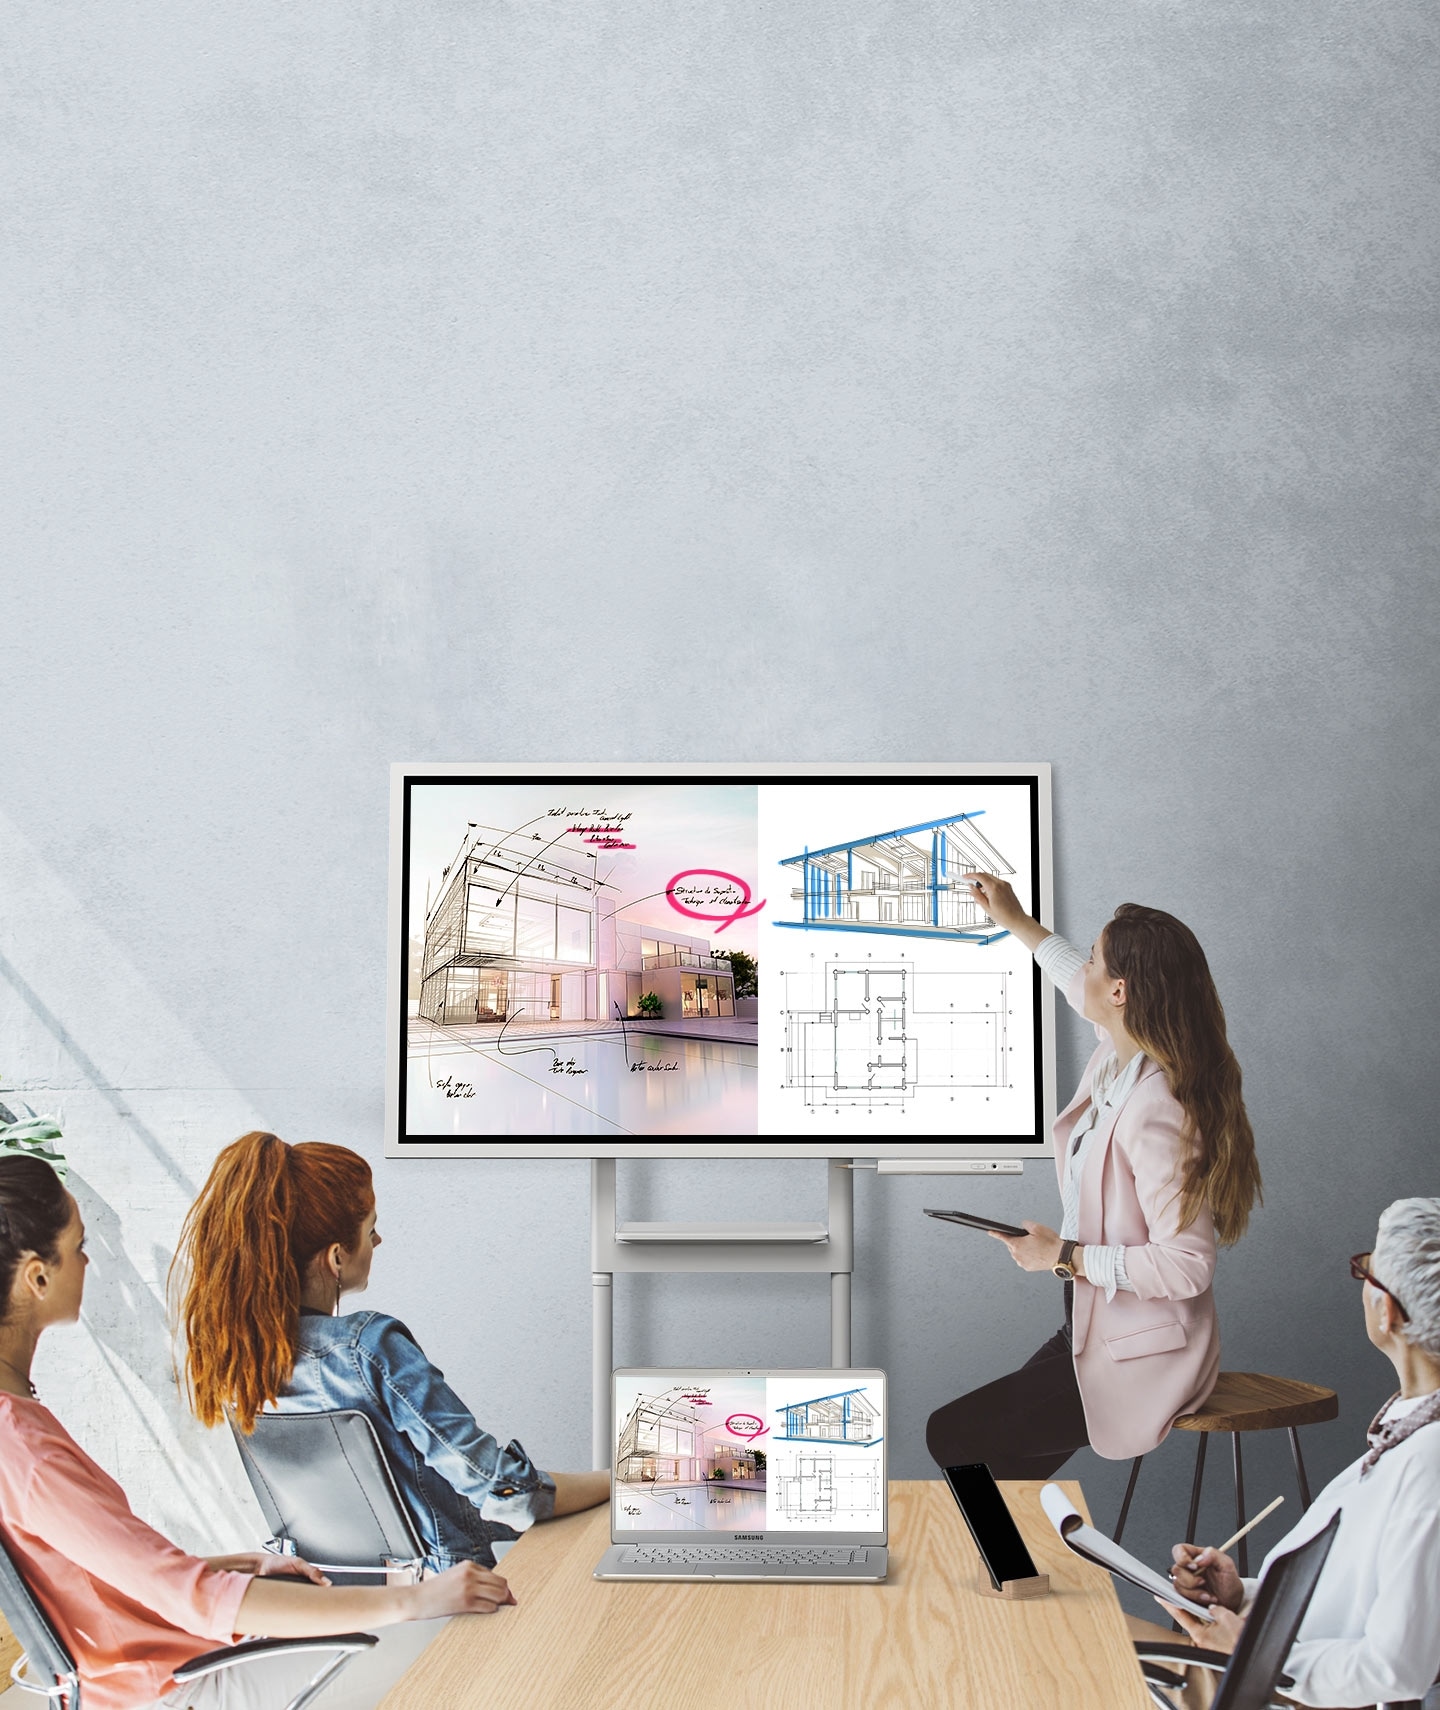 Una imagen que muestra cuatro personas en una reunión donde el dispositivo de Samsung Flip y un computador están conectados, mostrando las mismas imágenes. Están mirando la pantalla del Samsung Flip en modo horizontal y dos de ellos están tomando notas.